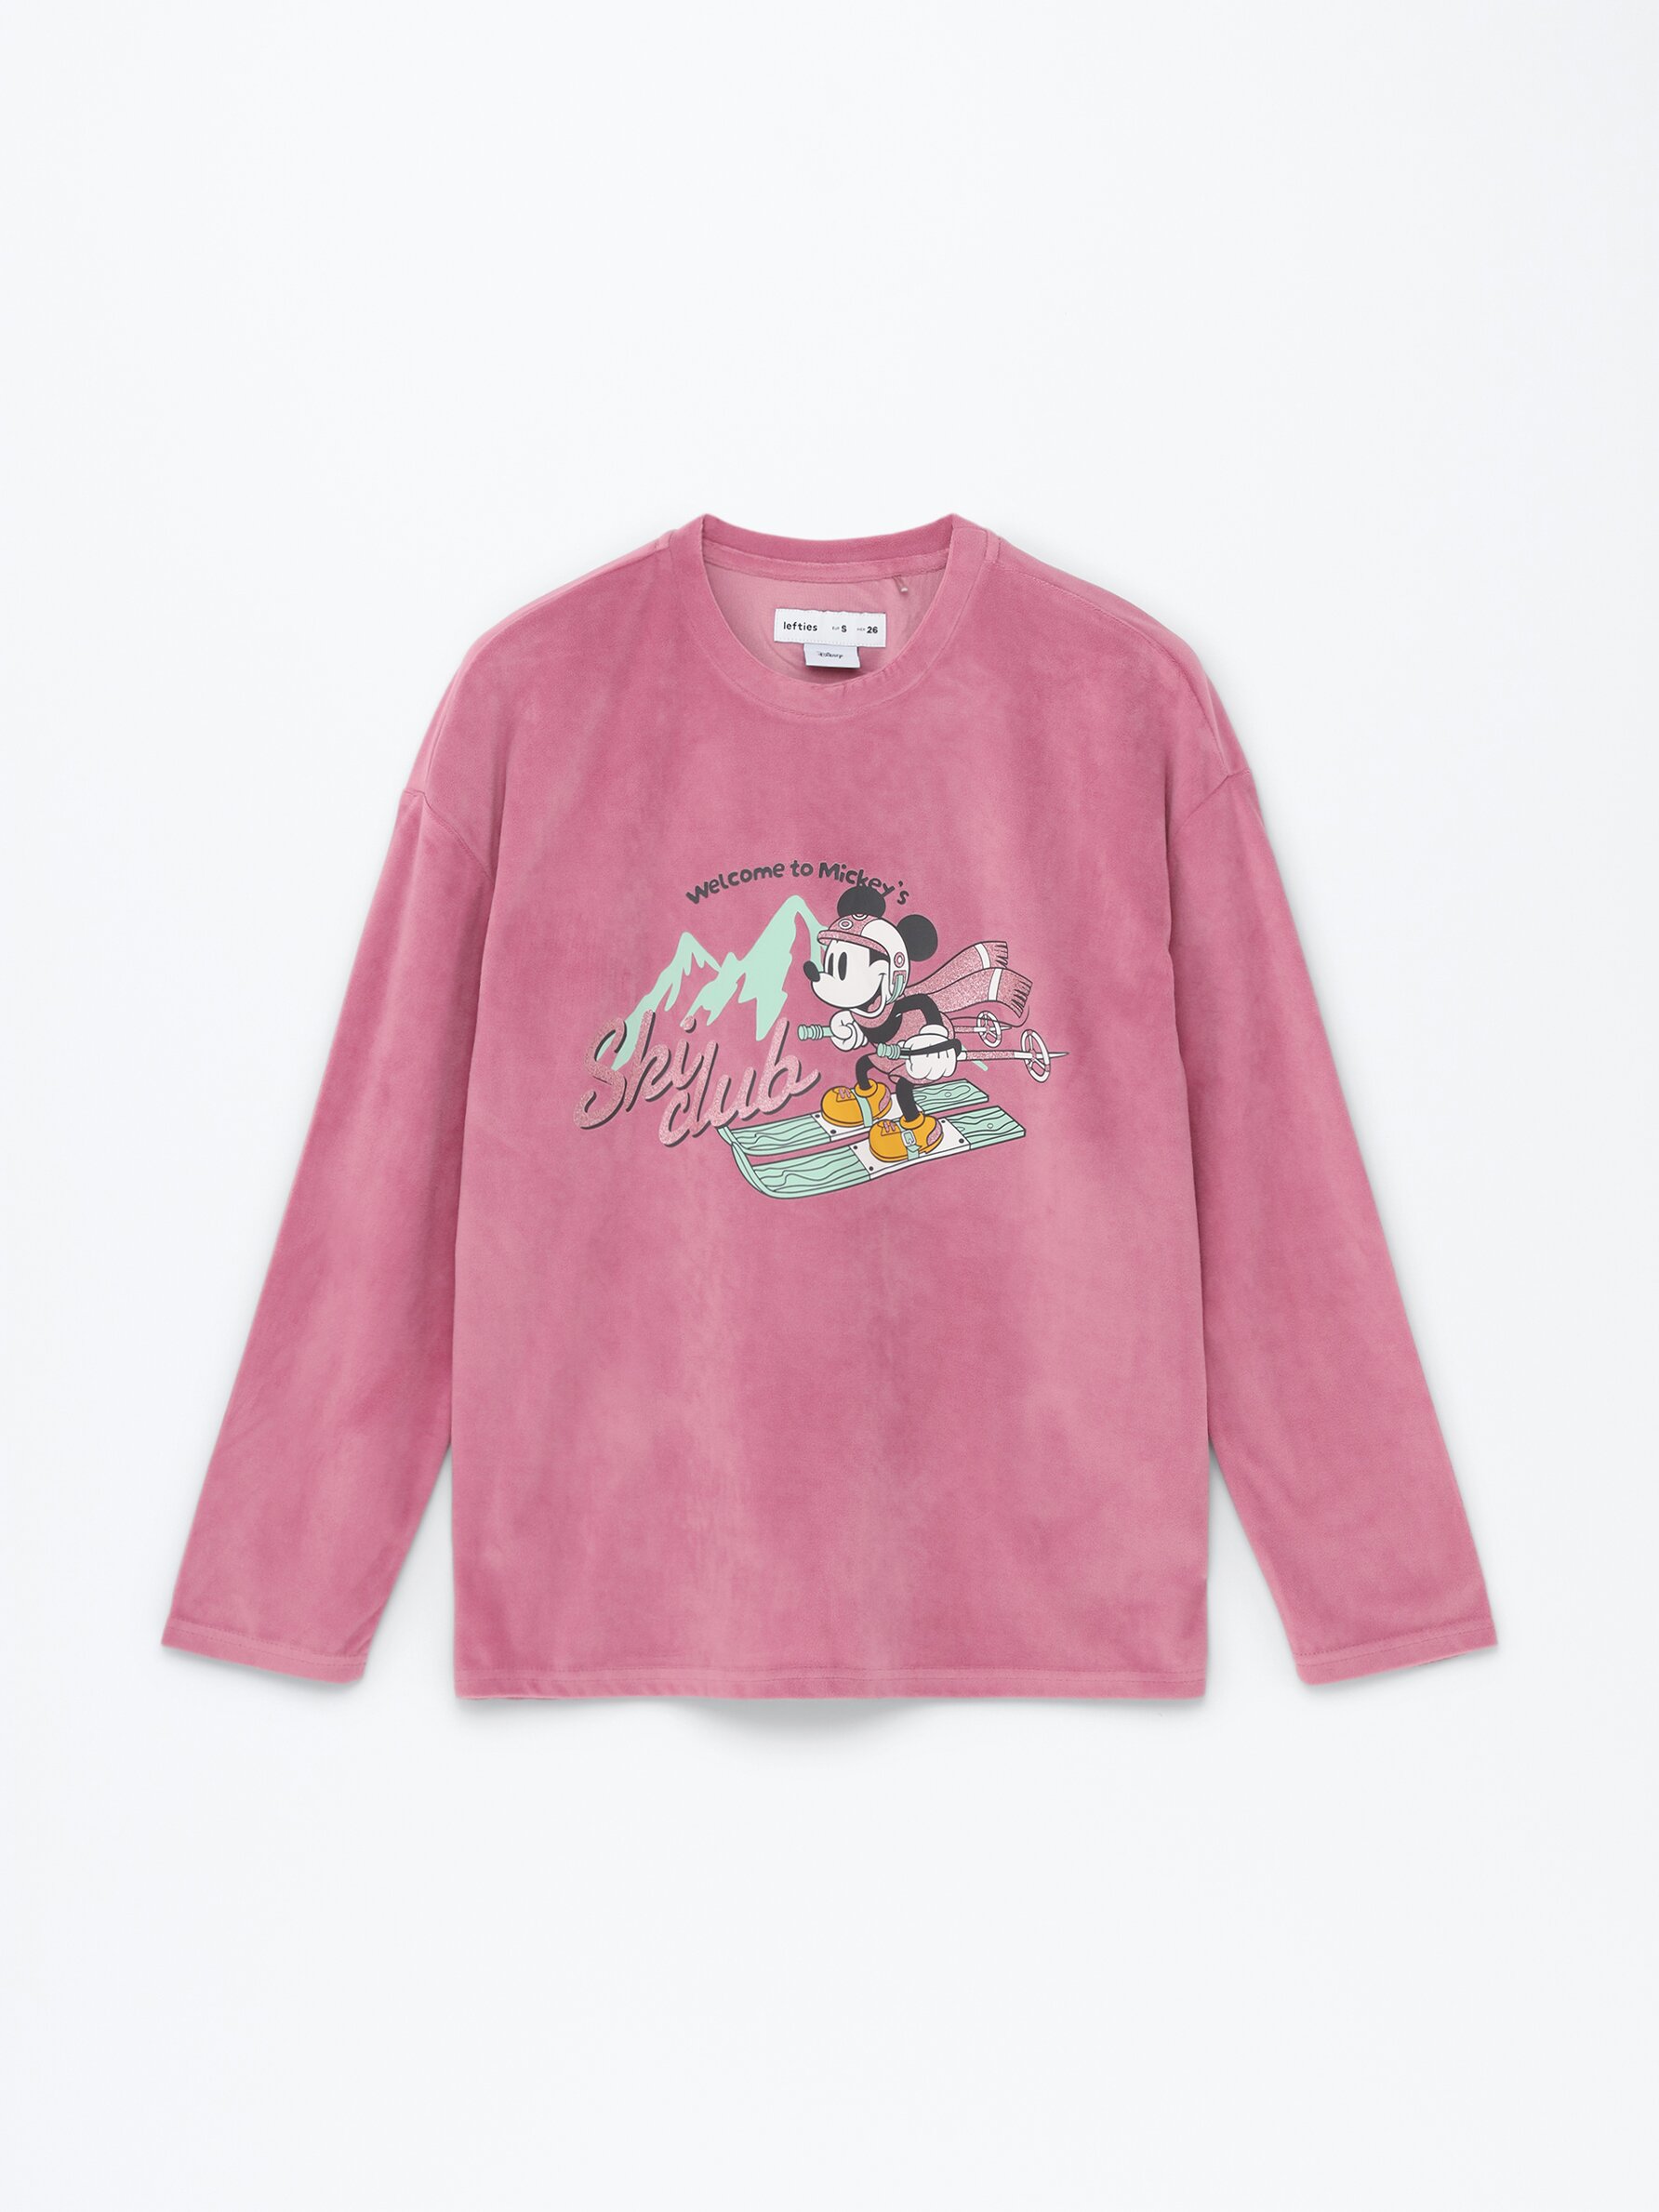 Pijama mujer manga larga Minnie&Mickey Disney